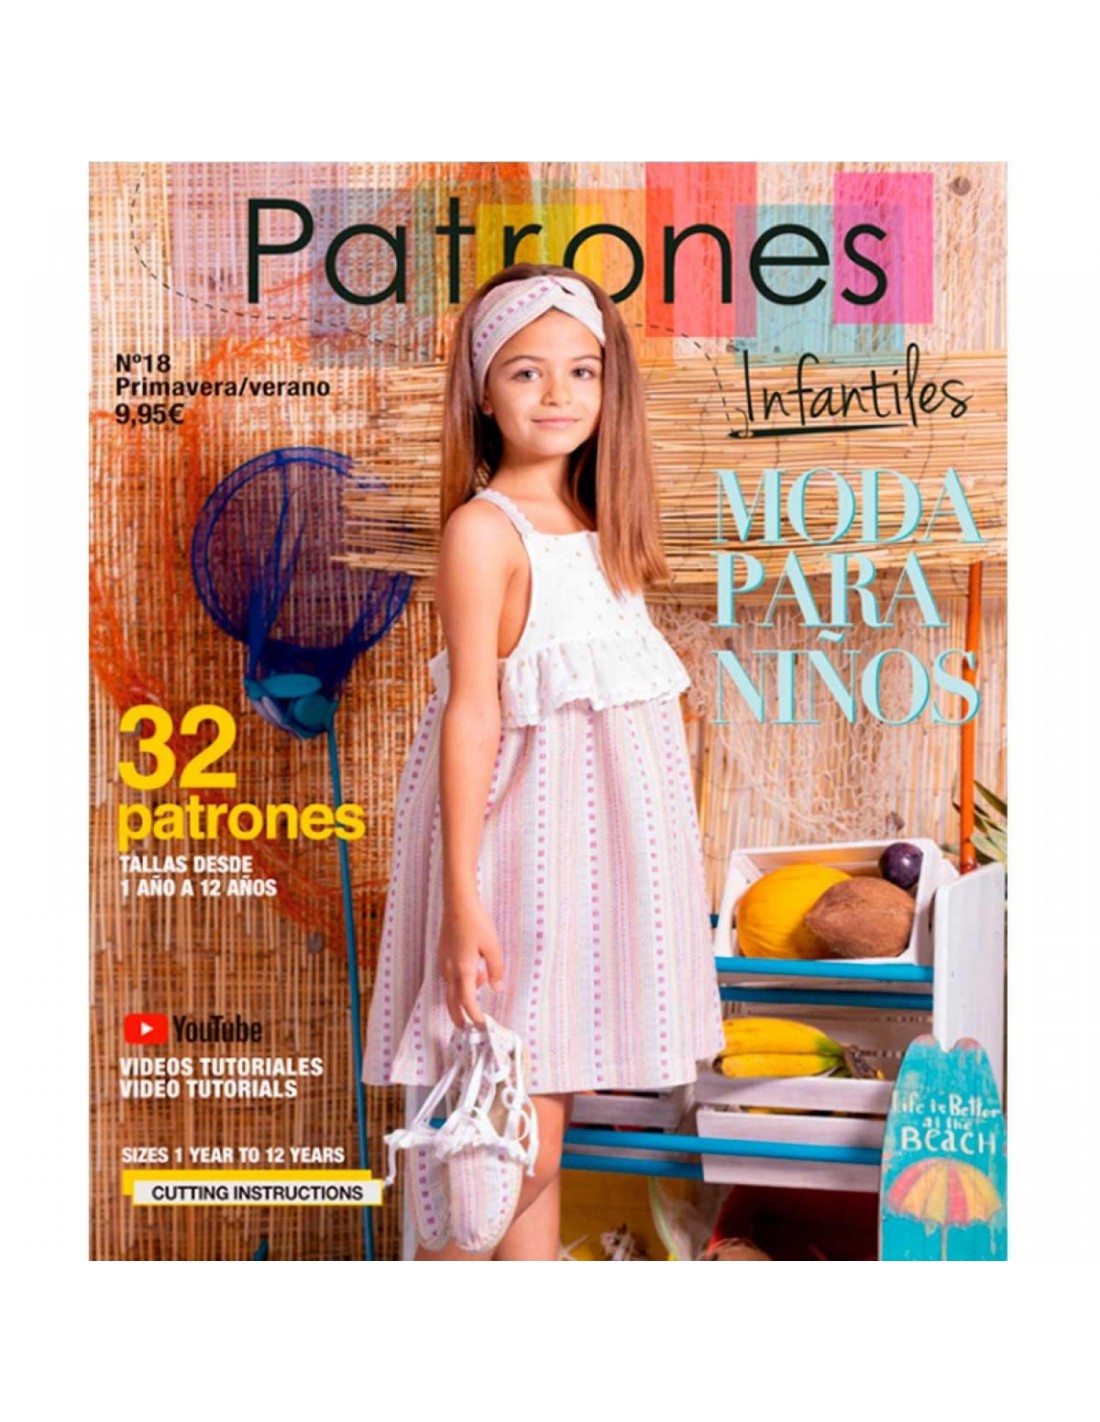 Revista patrones nº18 primavera/verano moda para niños